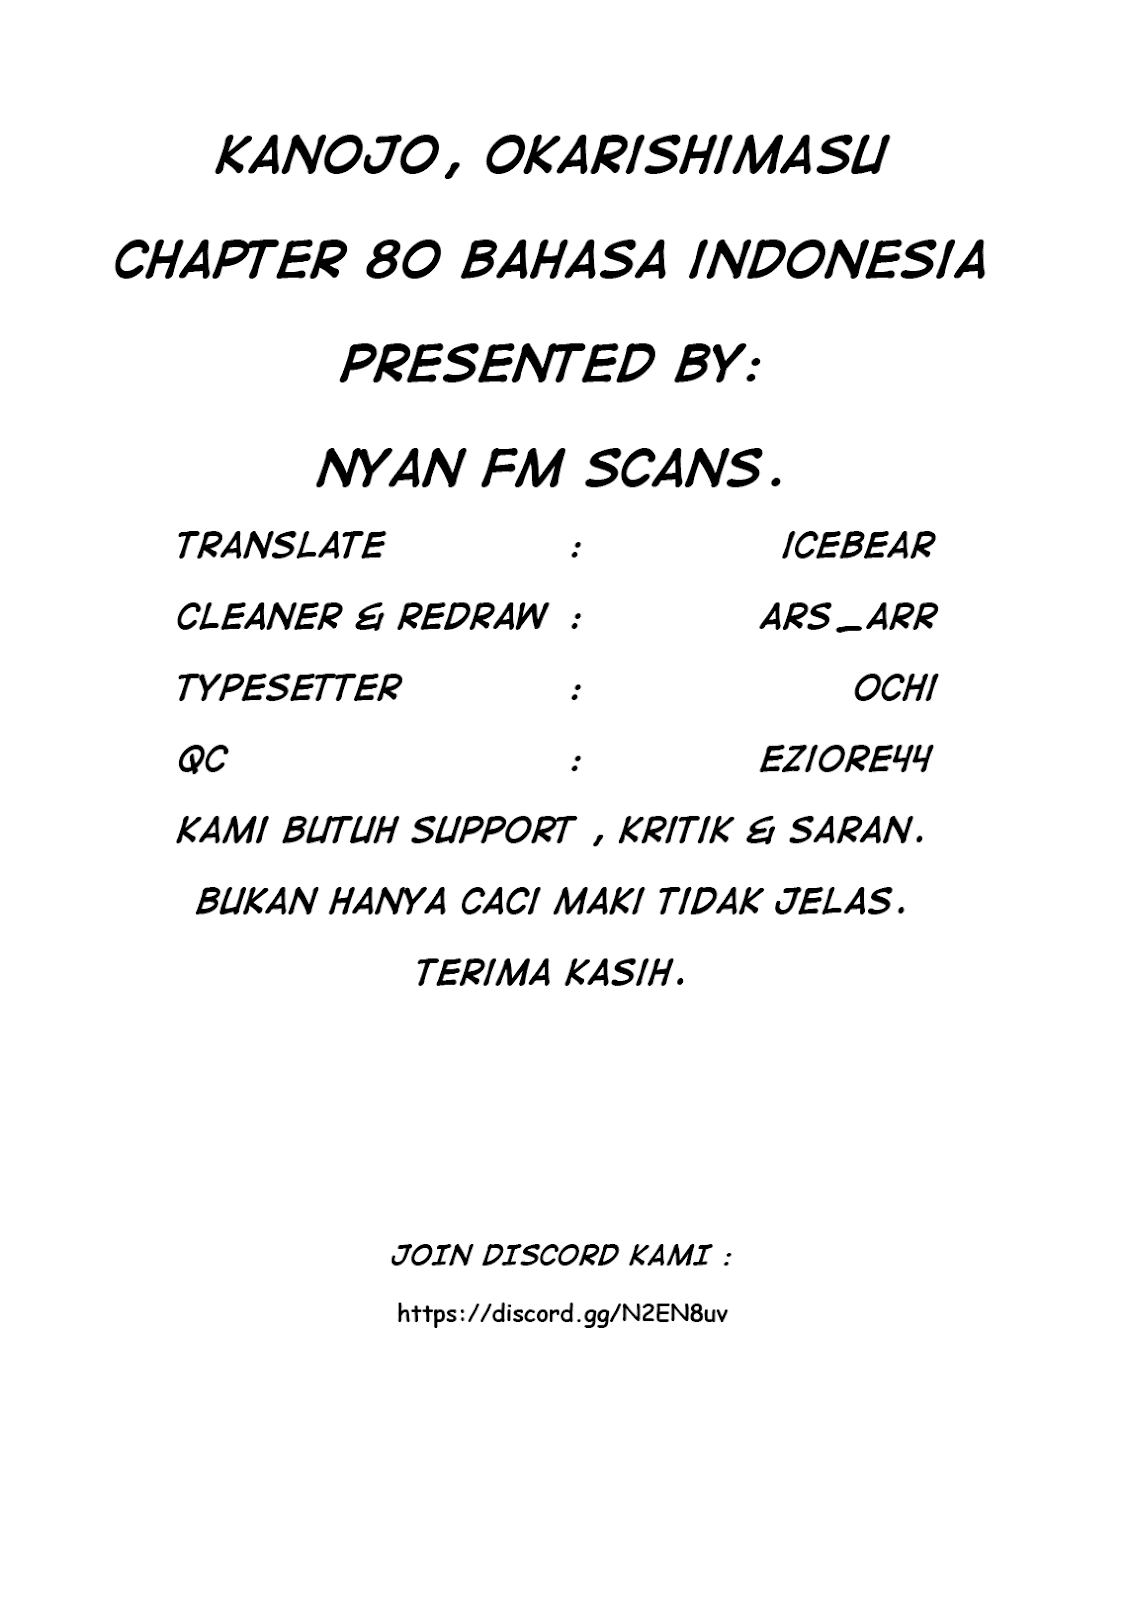 Kanojo, Okarishimasu Chapter 80 Bahasa Indonesia